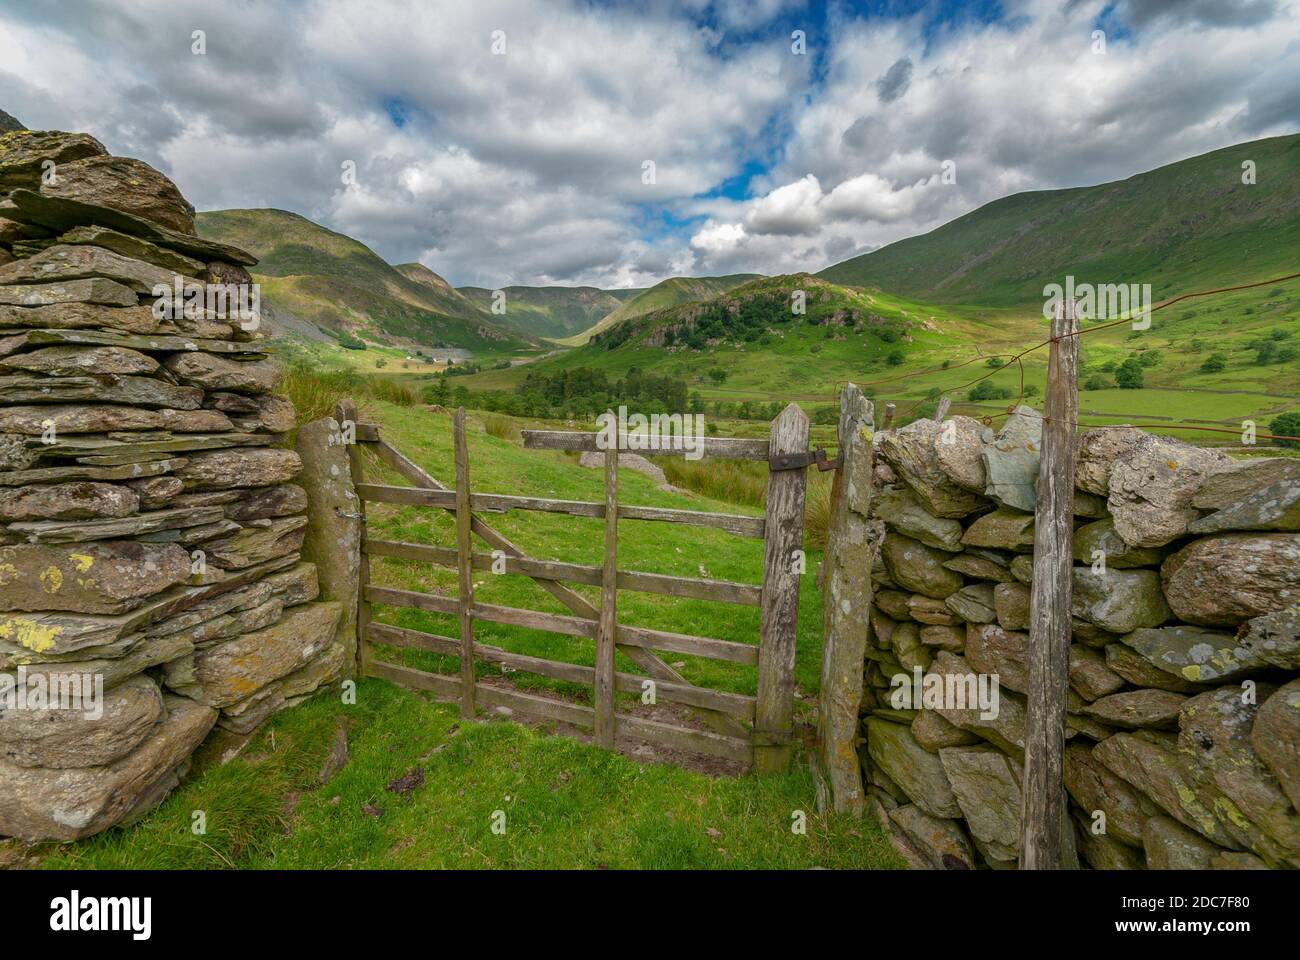 Un'idilliaca scena di campagna inglese con un vecchio cancello rotto sei bar che conduce l'occhio attraverso pascoli verdi a colline lontane e cieli pittoreschi. Foto Stock